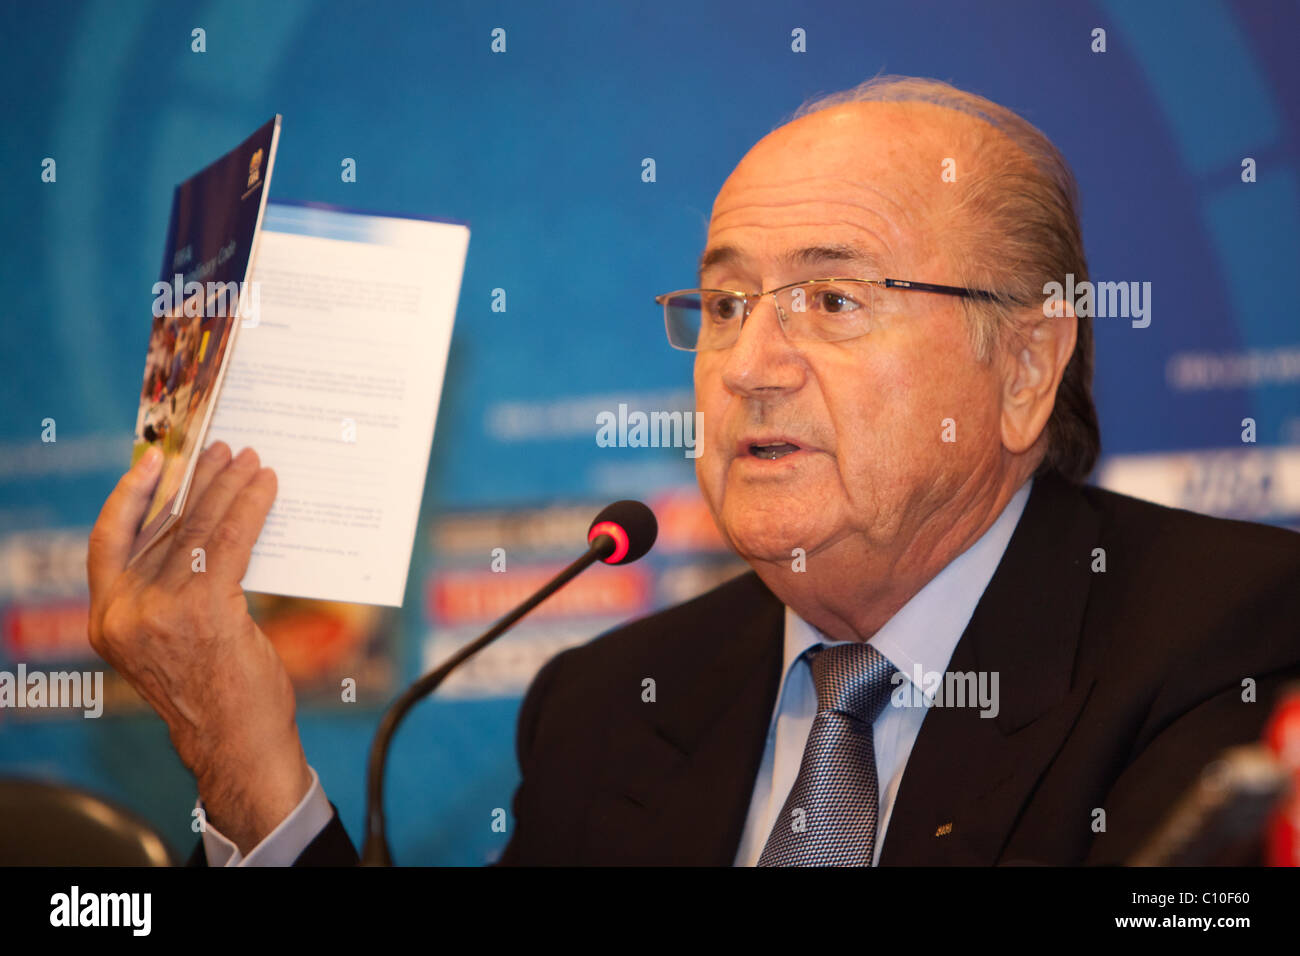 FIFA-Präsident Sepp Blatter hält eine Kopie der FIFA-Disziplinarreglement während einer Frage auf einer Pressekonferenz U20. Stockfoto